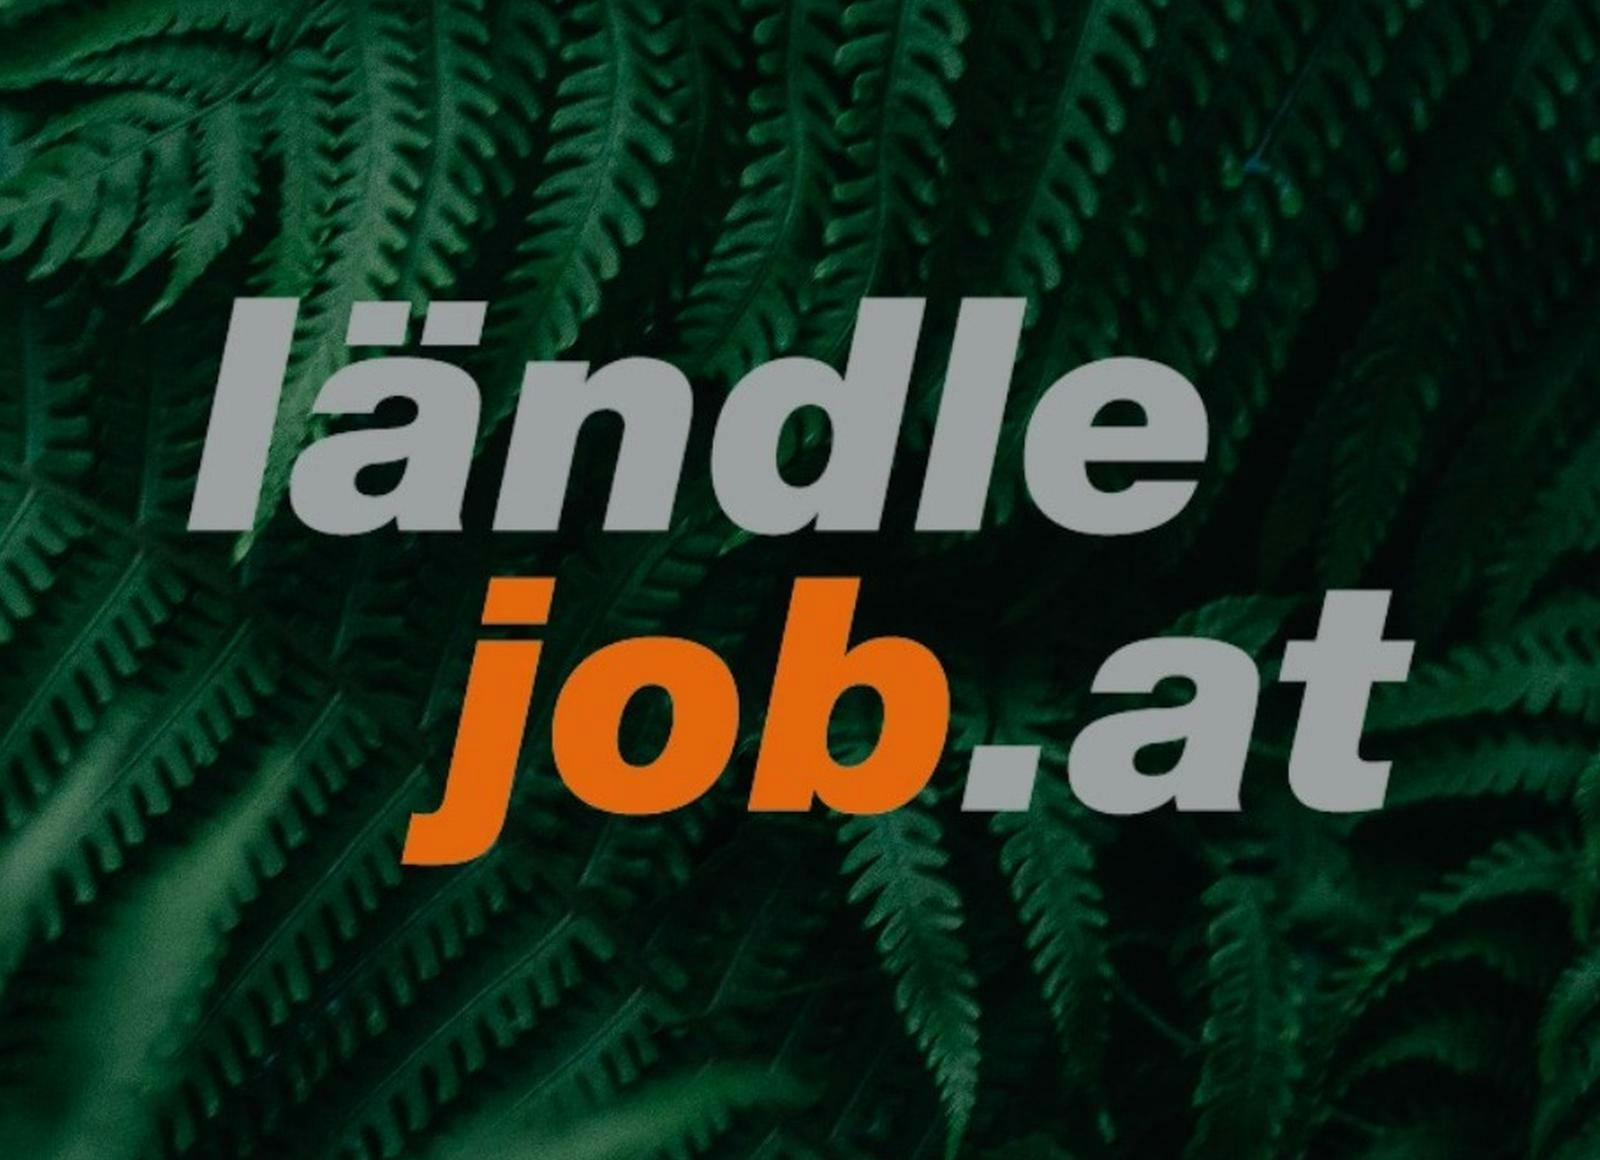 Logo der Firma Ländlejob.at_Firmenname in Worter ausgeschrieben_orange und graue Schrift Hintergrund grüne Farnblätter © ©ländlejobat_russmedia